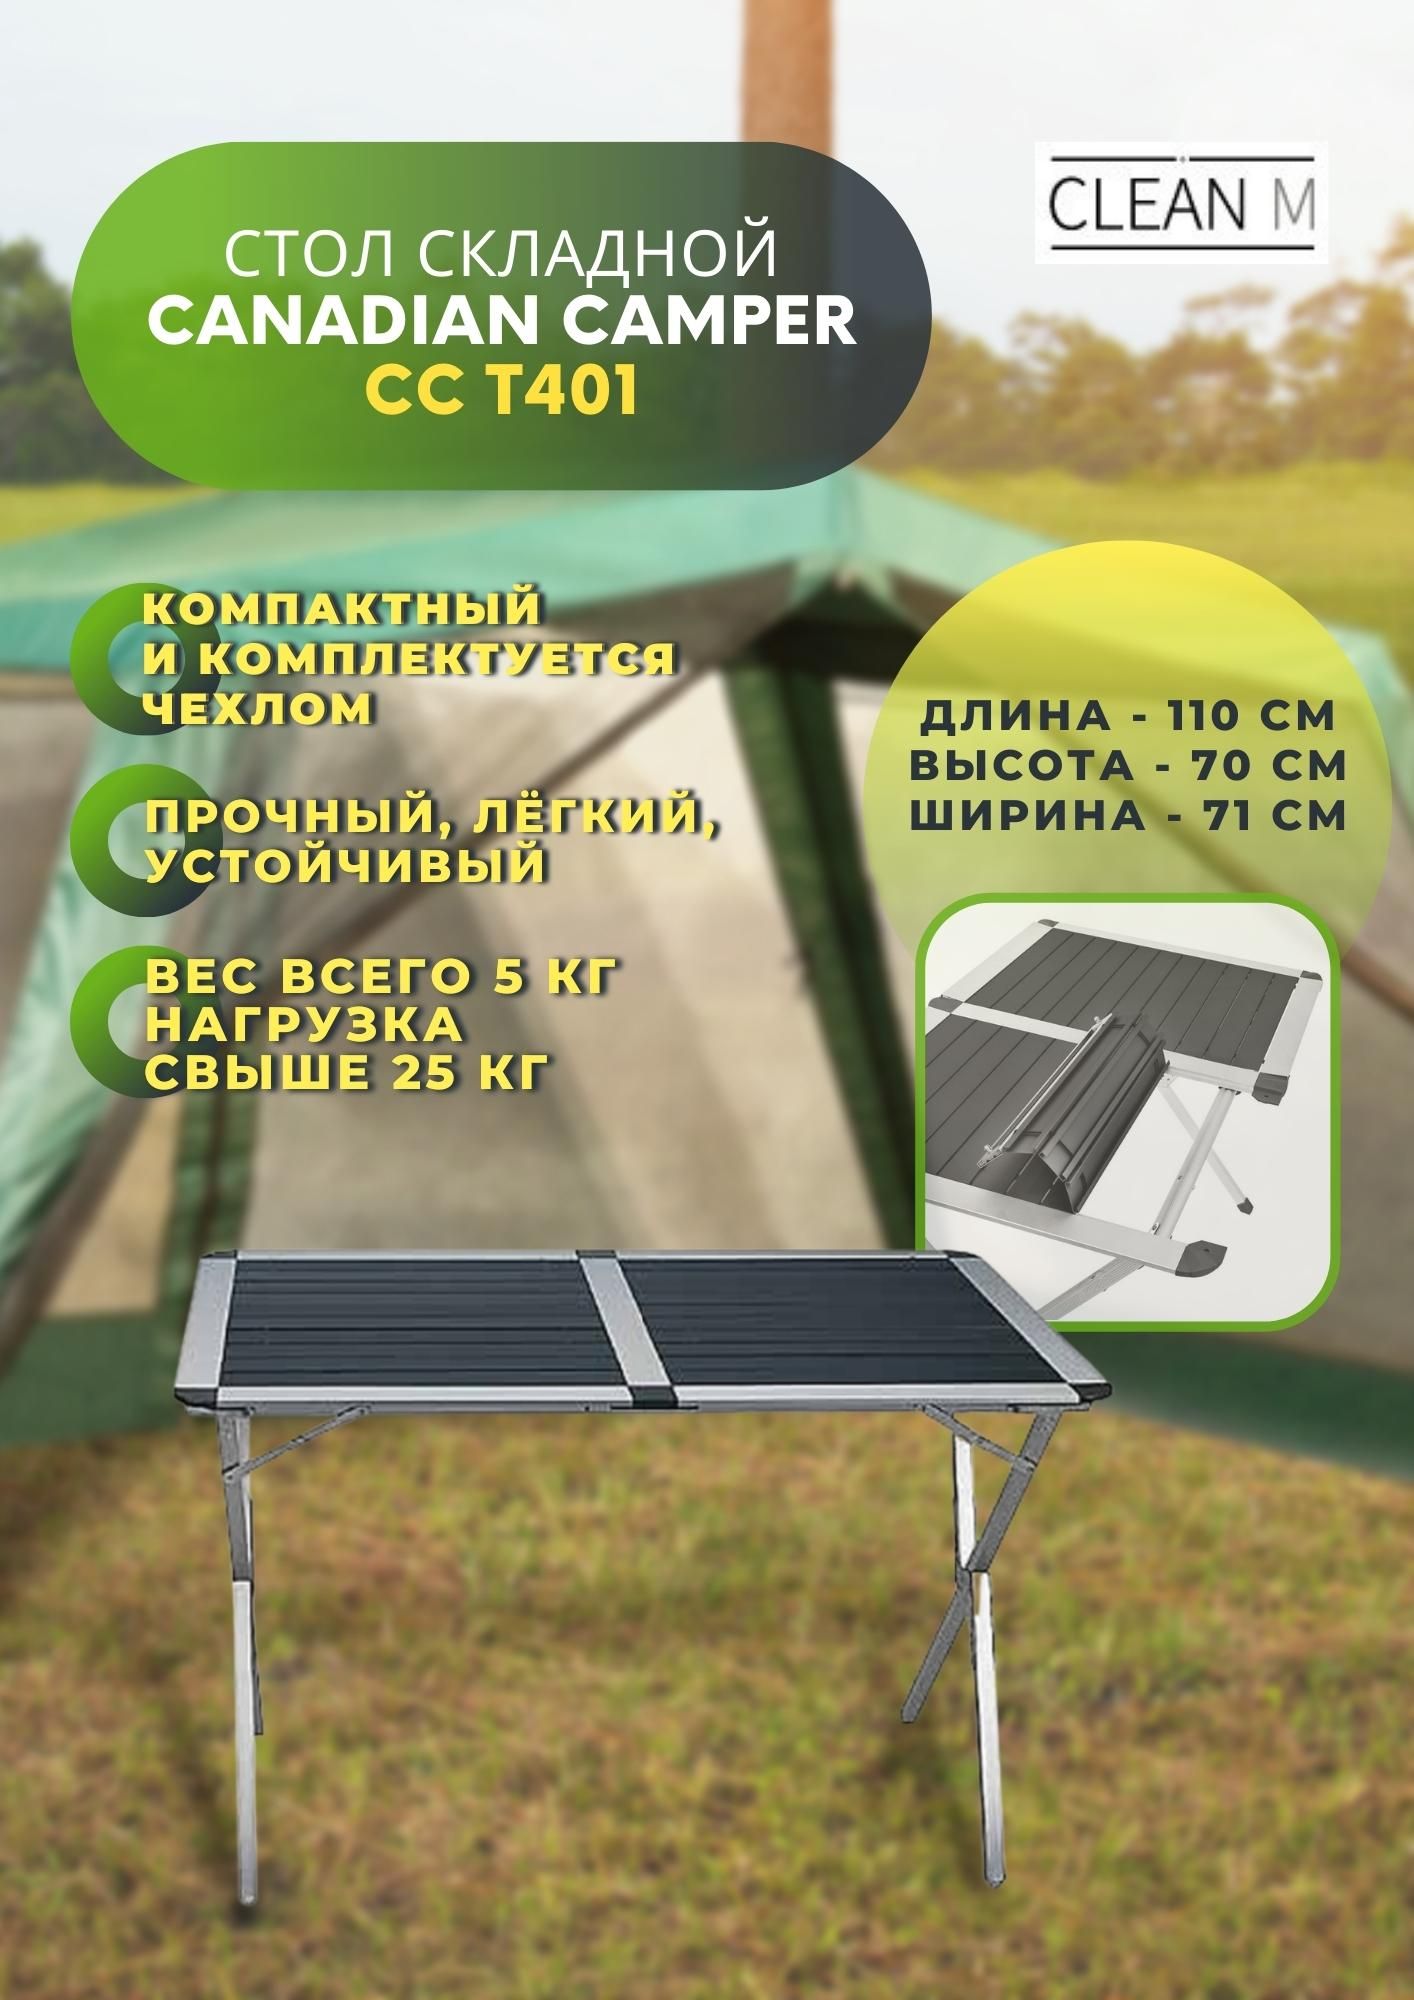 Canadian Camper cc-t401 цена авито